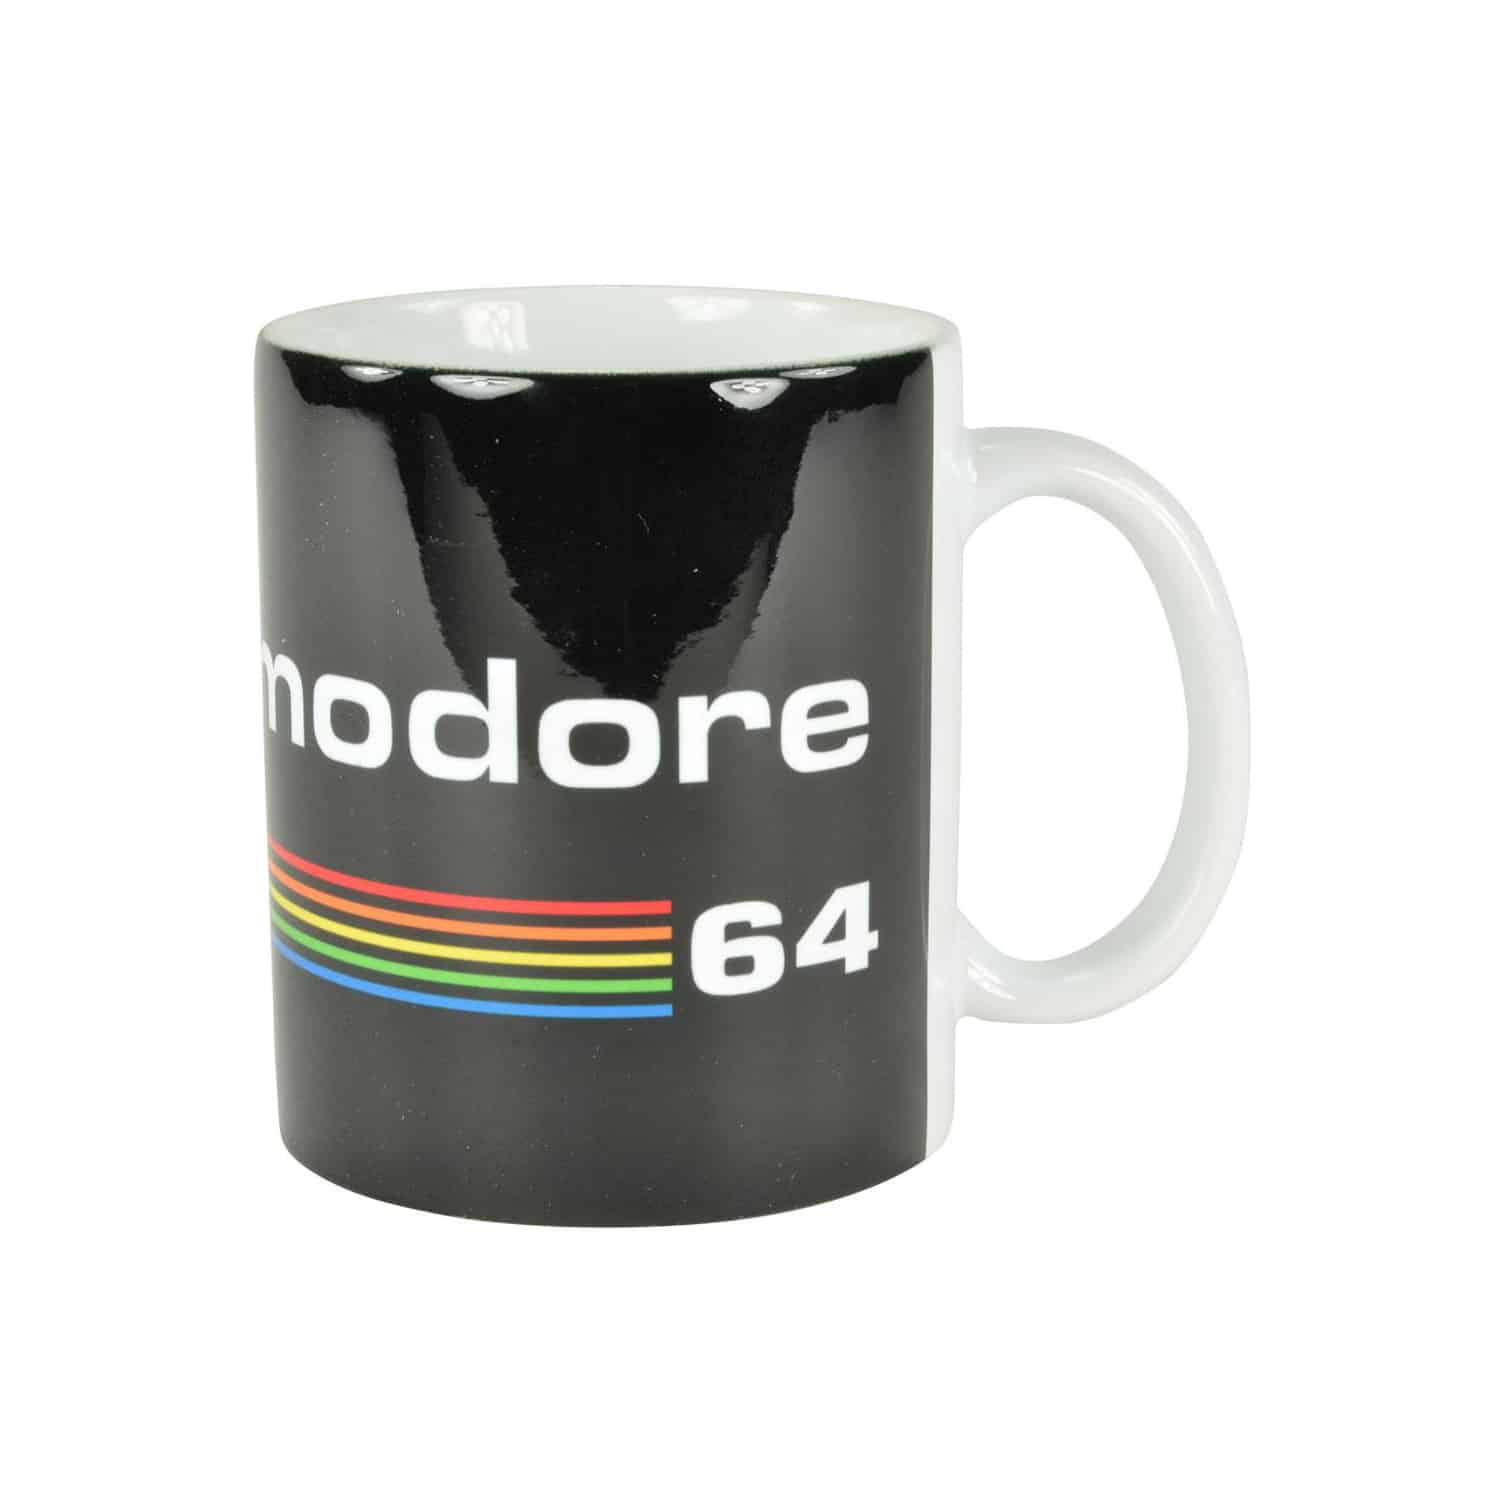 commodore-64-logo-mug